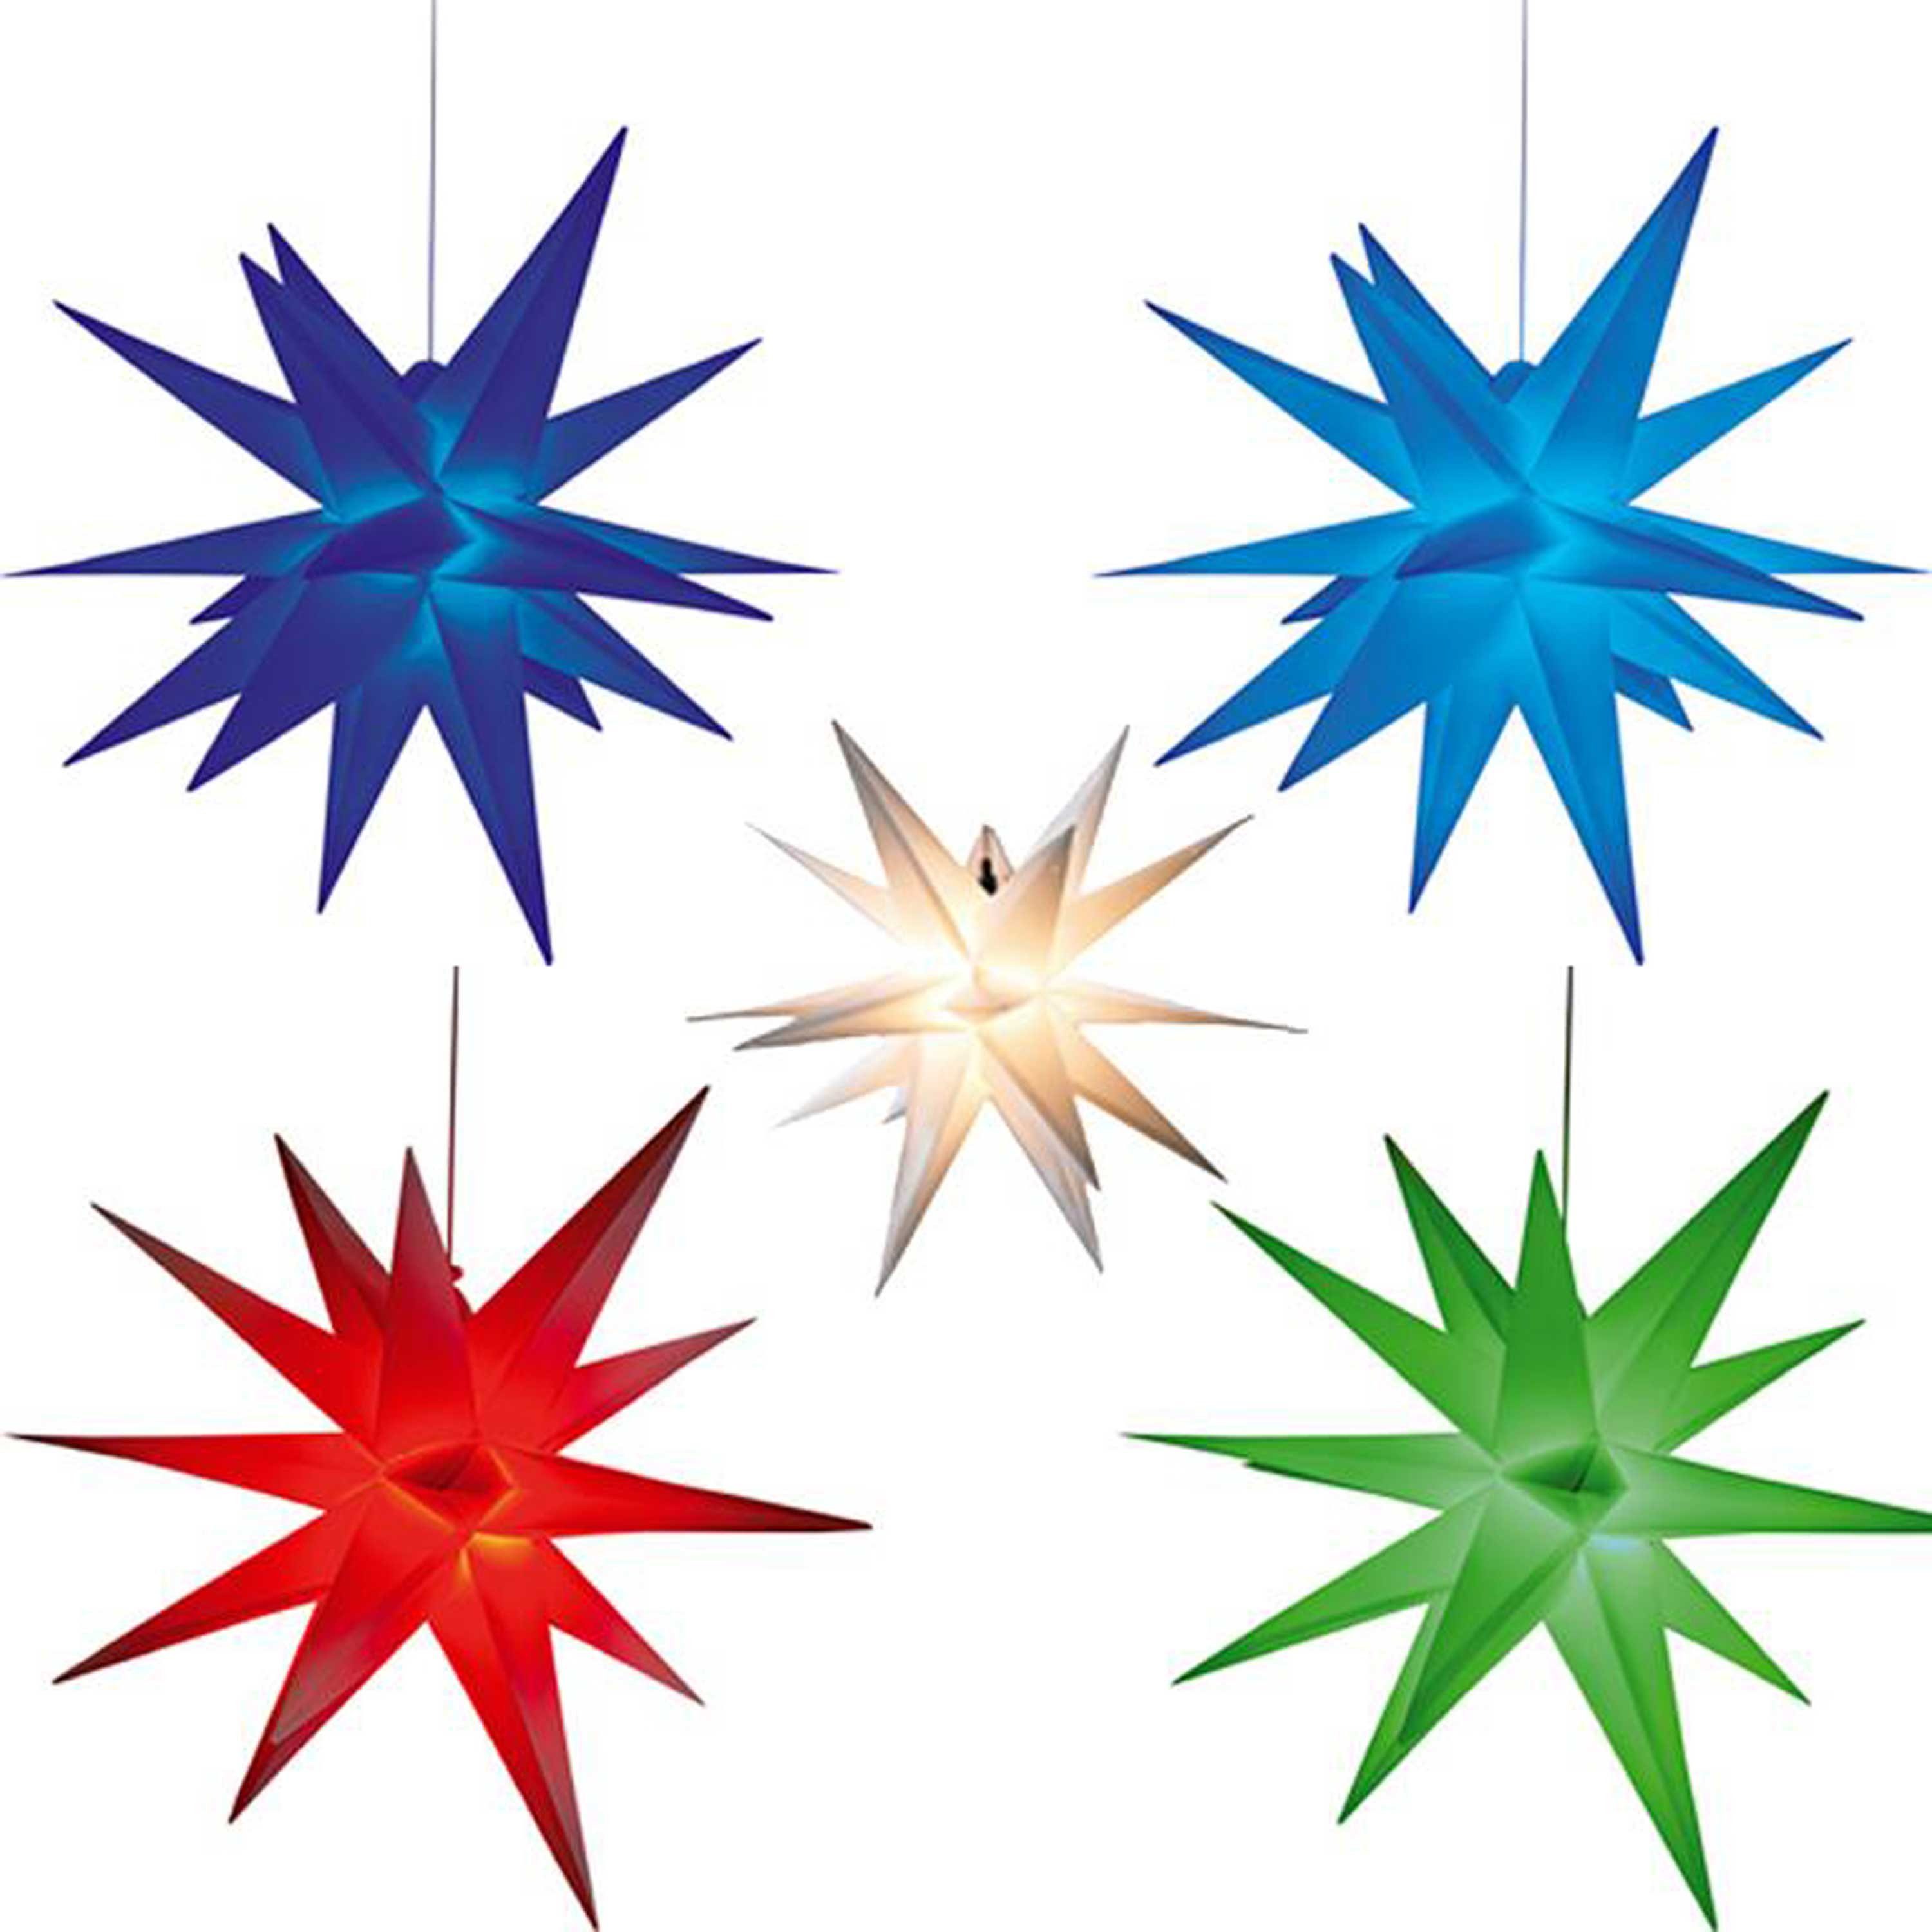 HGD Holz-Glas-Design Dekostern LED-Adventsstern mit Farbwechsel, 2 Größen, 60 cm